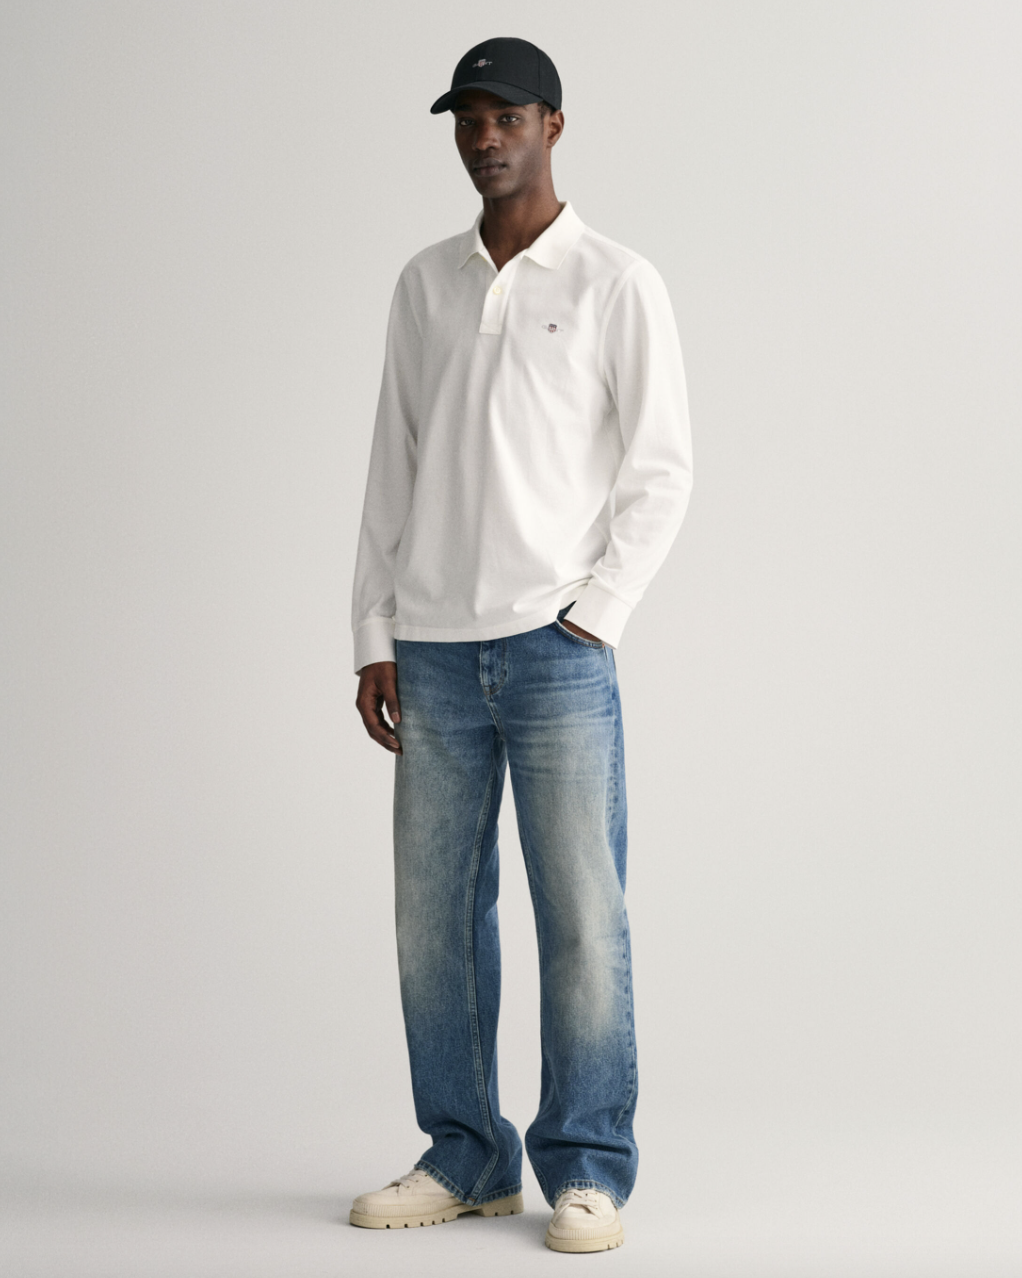 Gant Langermet Pique Bomull Hvit helfigur med jeans